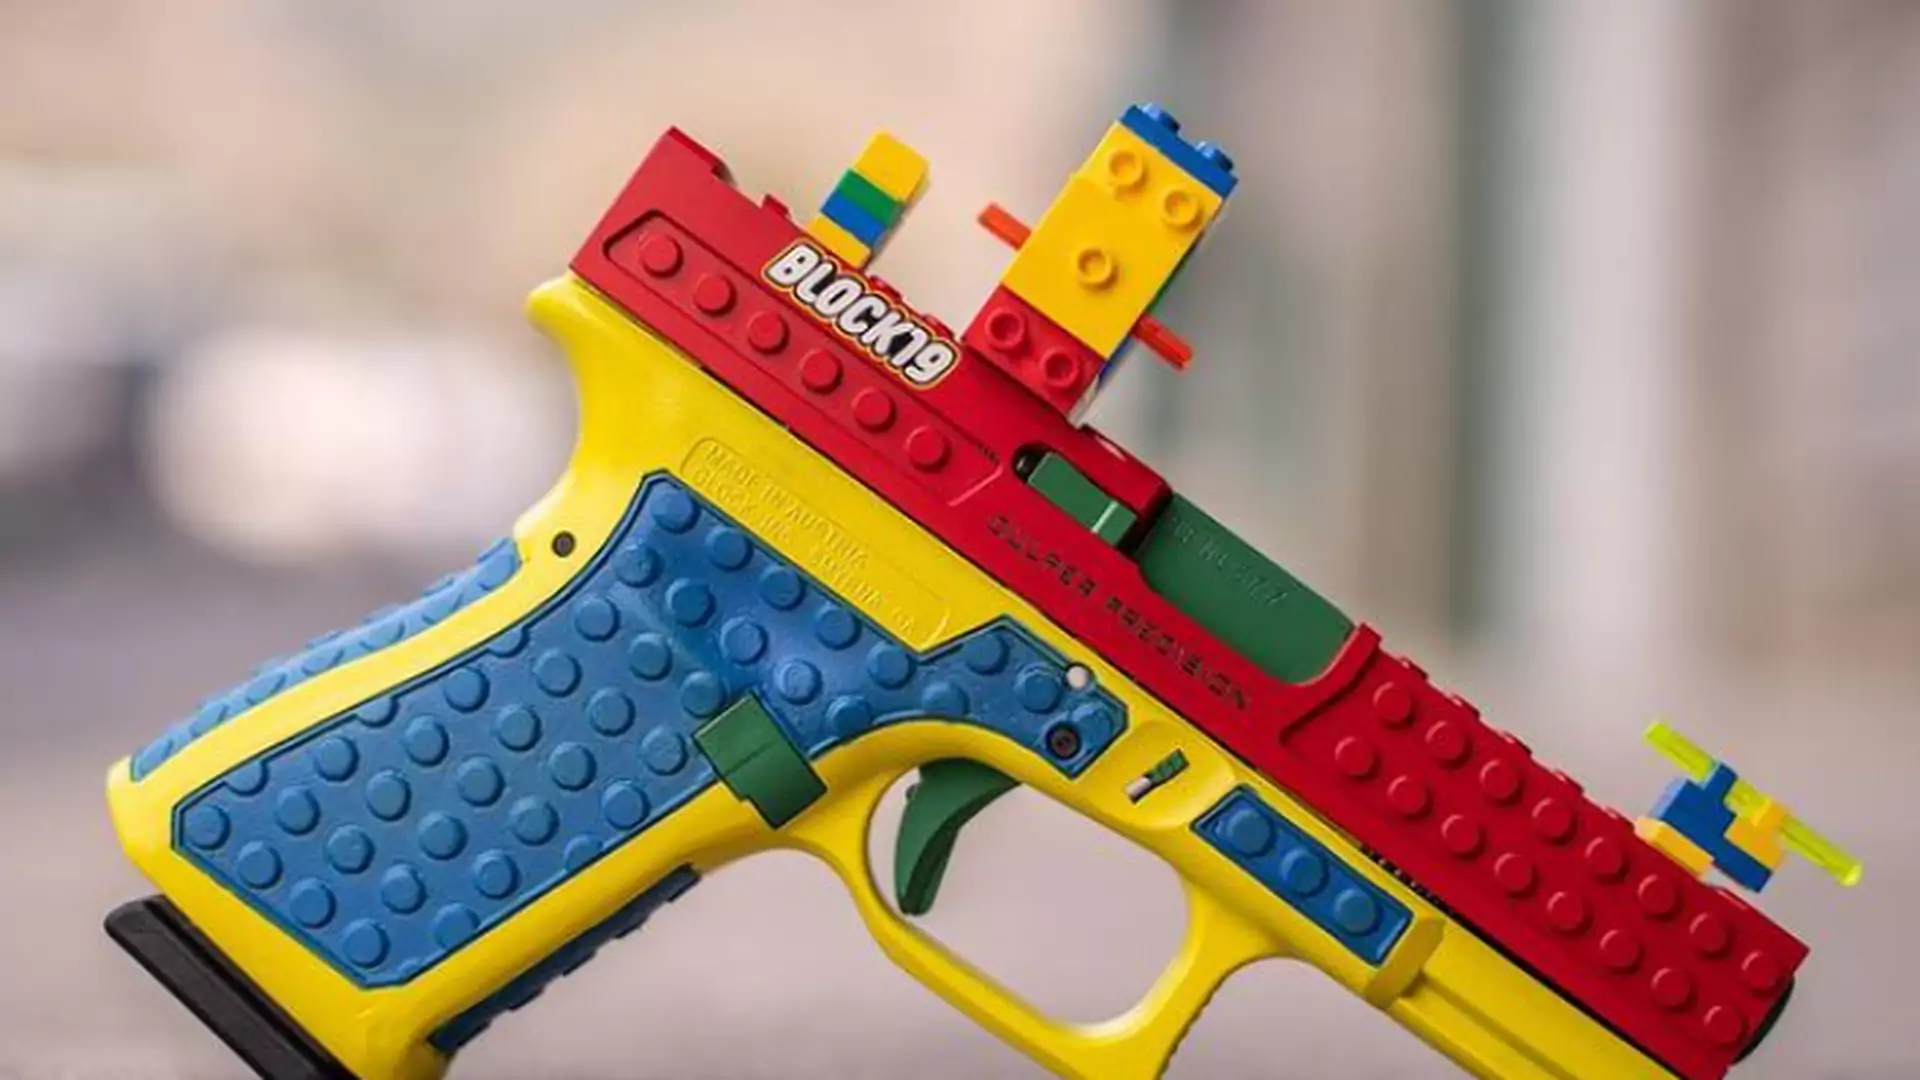 Zrobili prawdziwy pistolet, który wygląda jak zabawka Lego. Słuszne protesty aktywistów